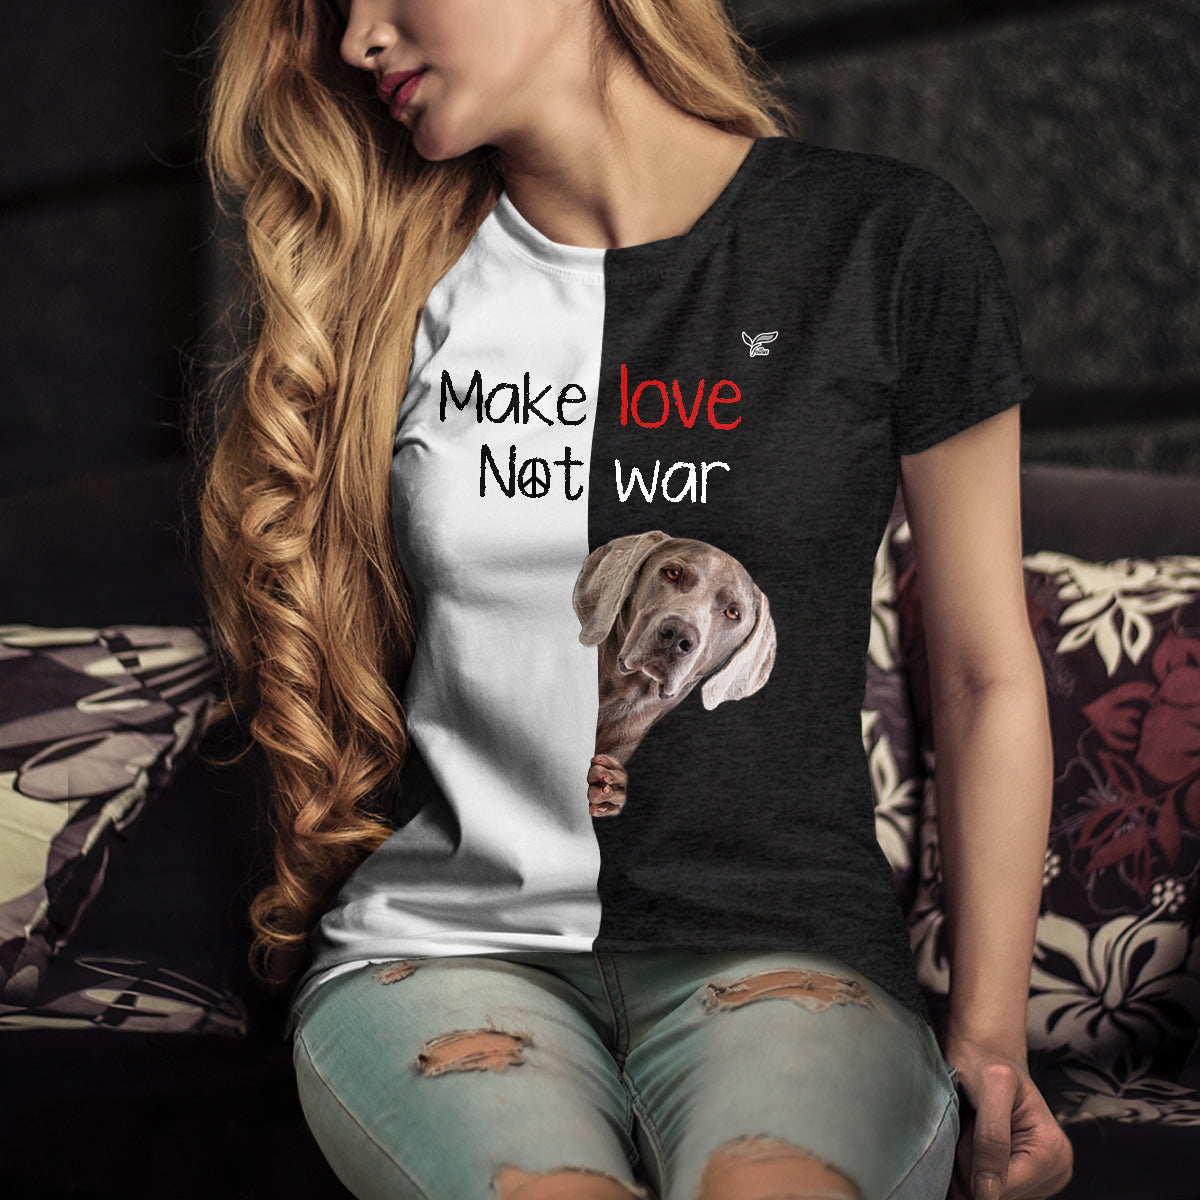 Make Love Not War - Weimaraner T-Shirt V1